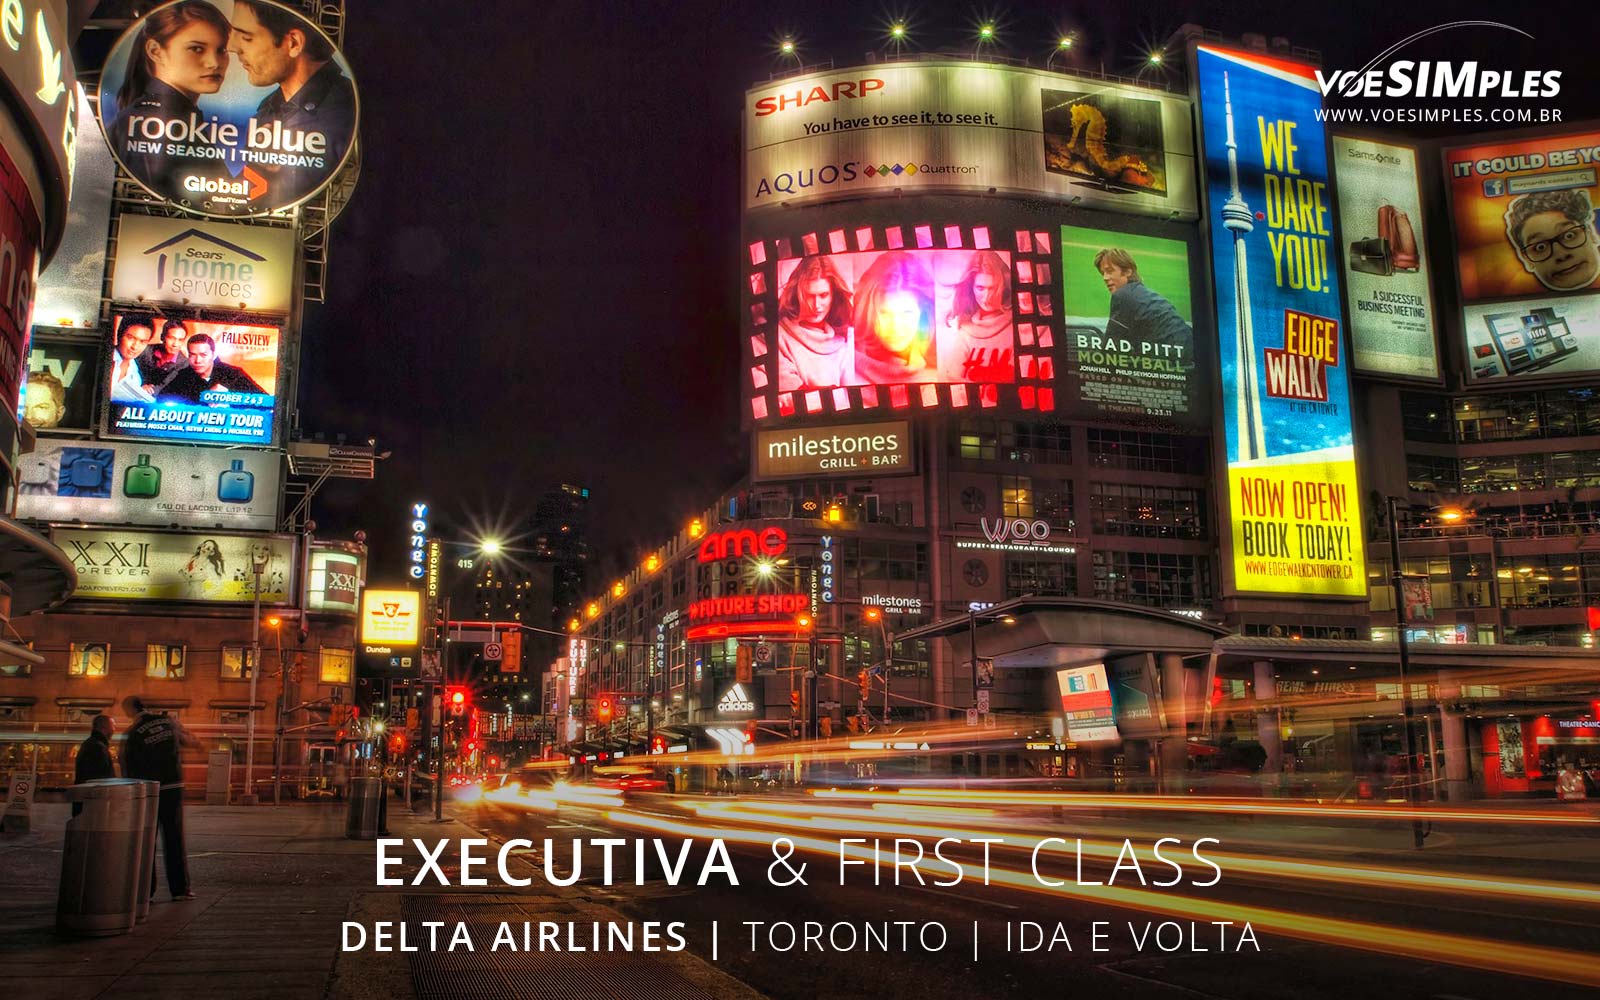 Passagem aérea classe executiva Delta Airlines Toronto 